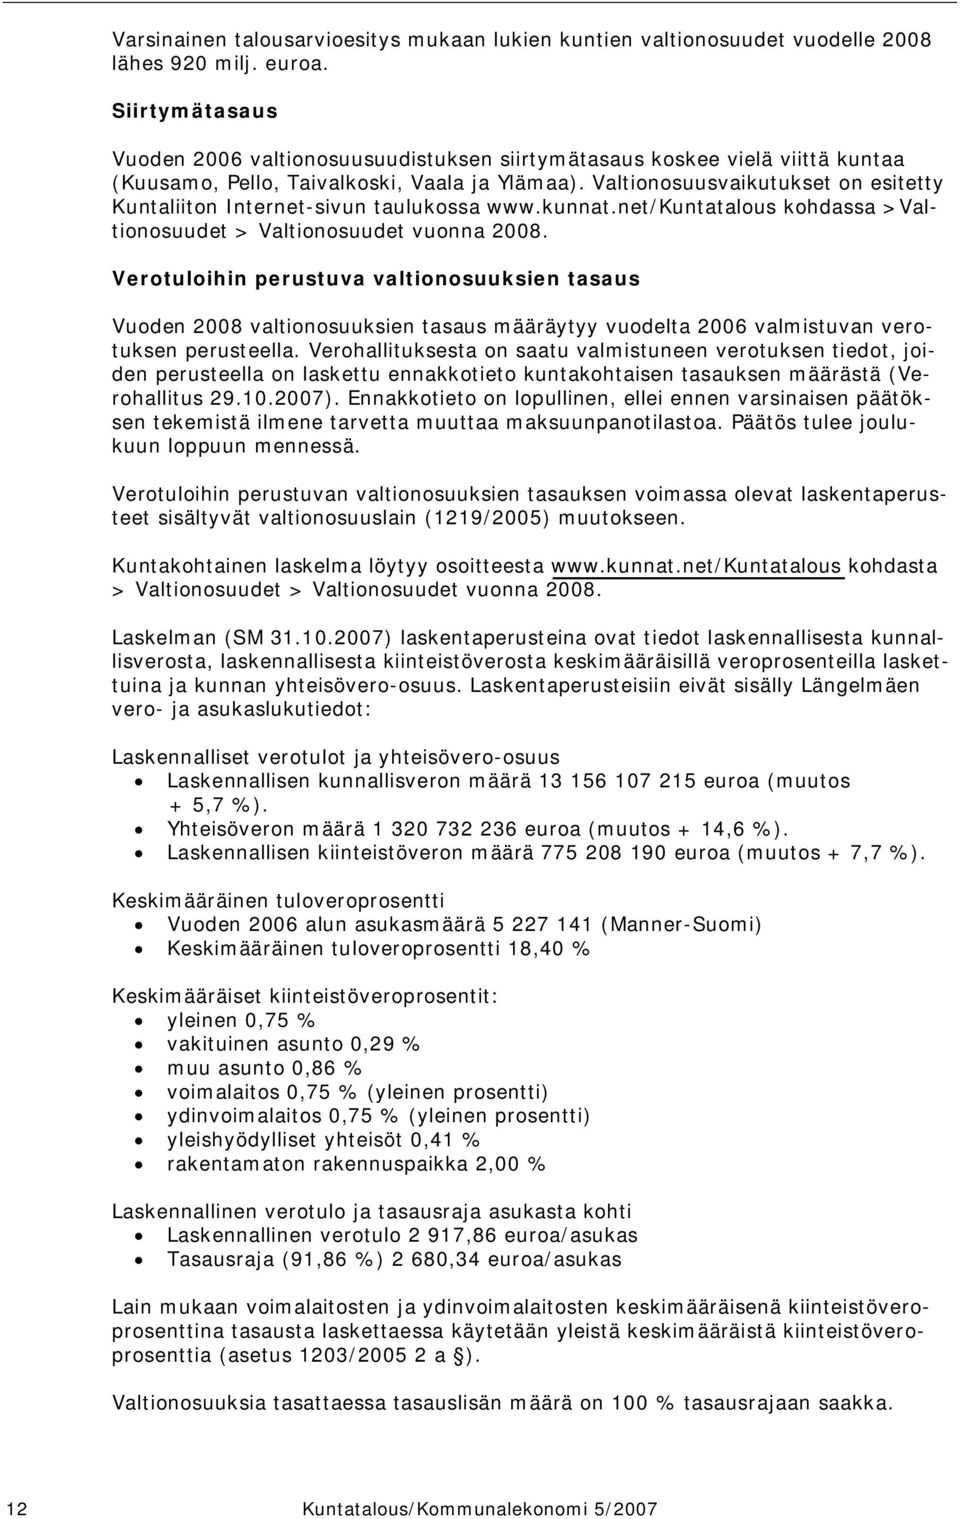 Valtionosuusvaikutukset on esitetty Kuntaliiton Internet-sivun taulukossa www.kunnat.net/kuntatalous kohdassa >Valtionosuudet > Valtionosuudet vuonna 2008.